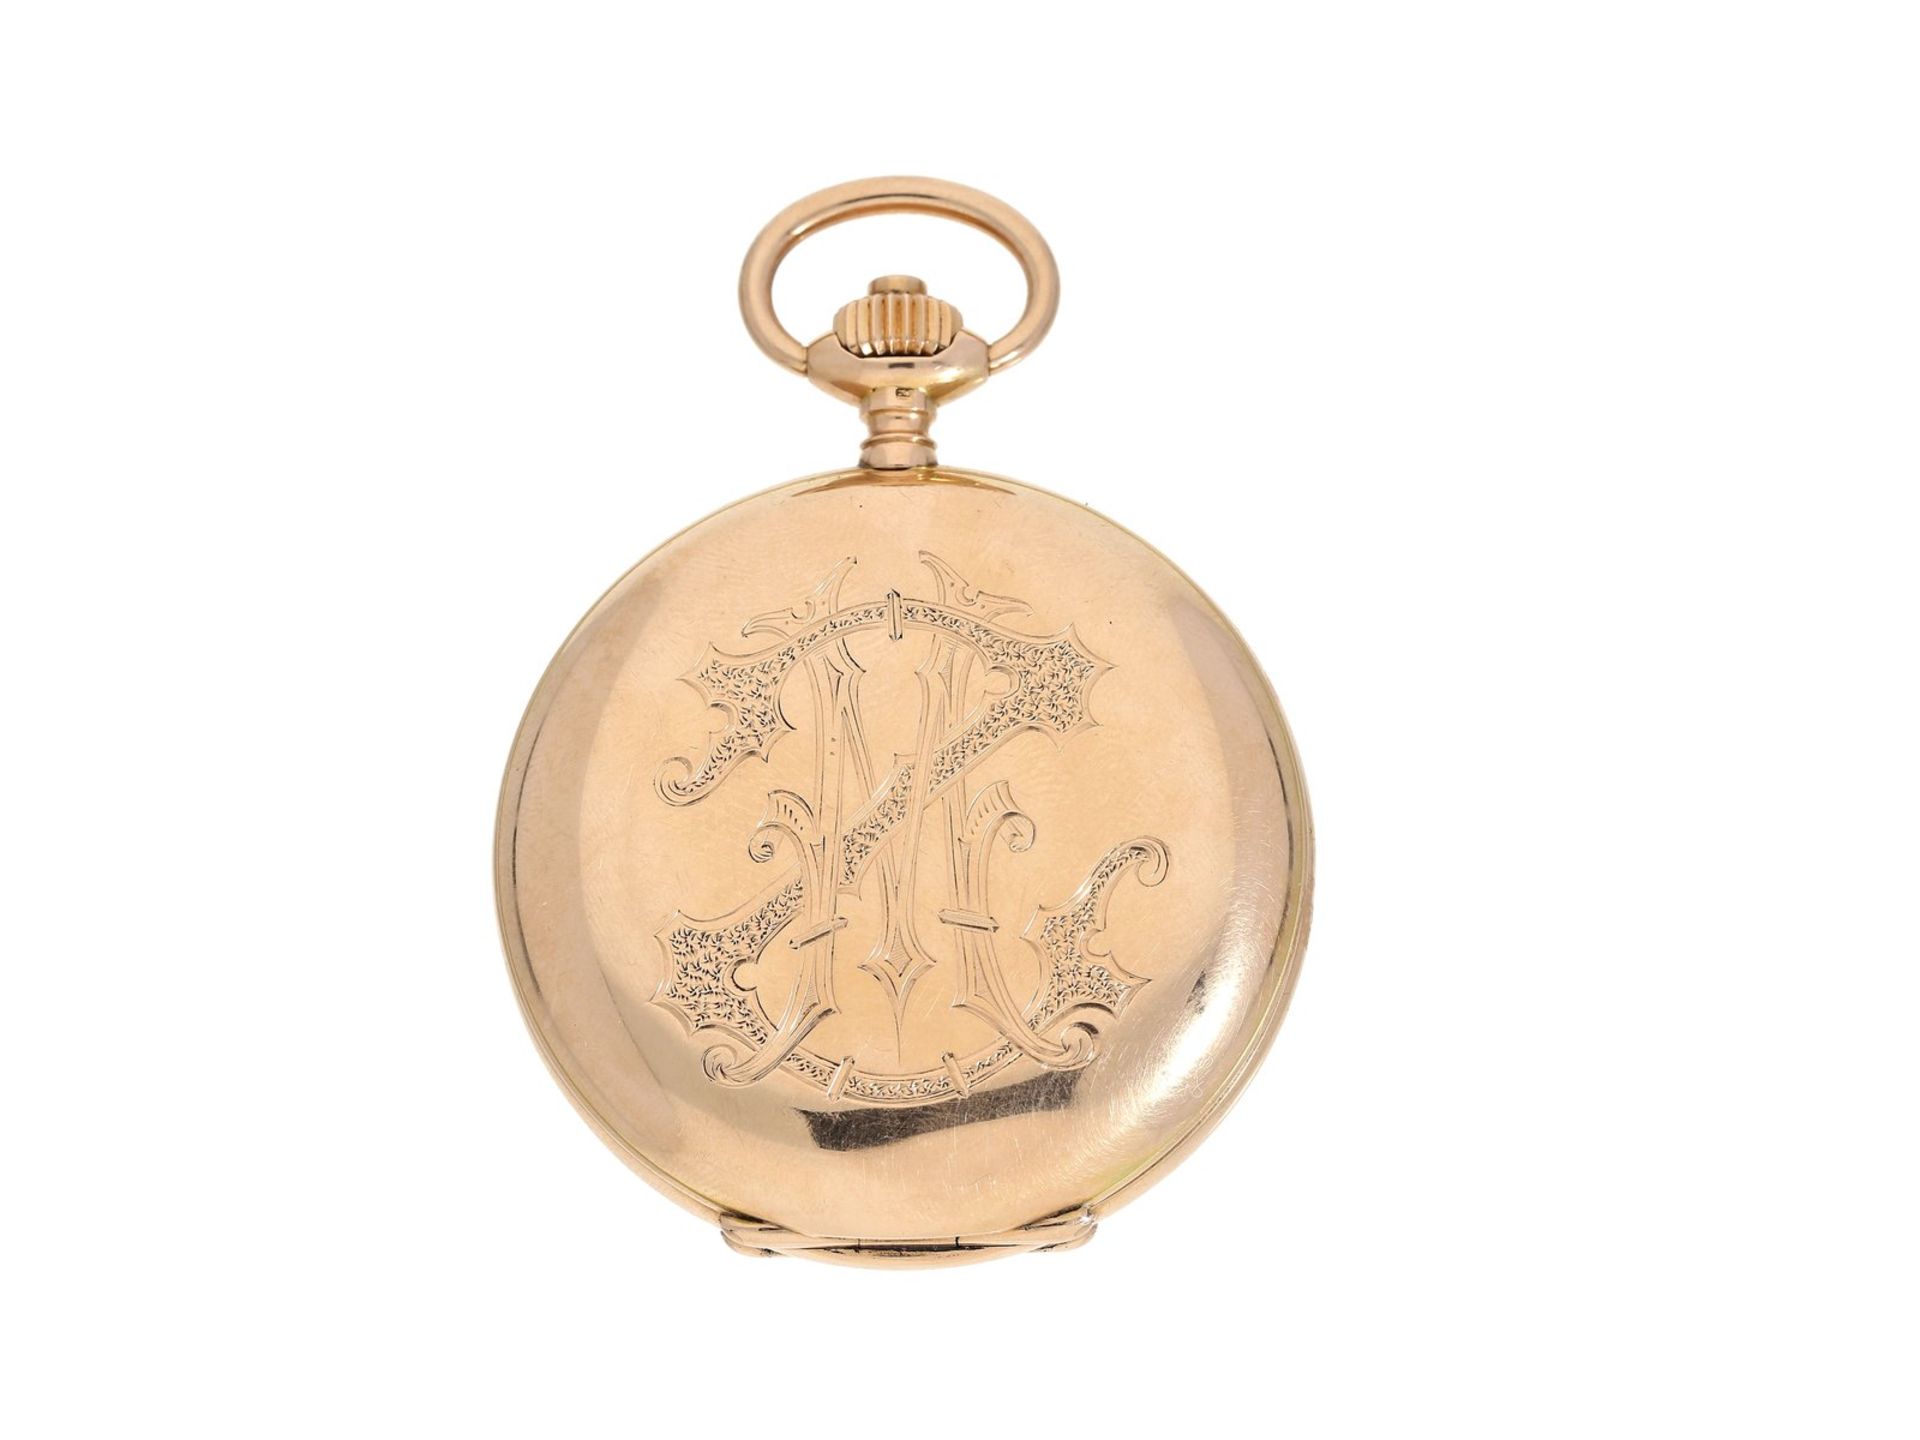 Taschenuhr: feine rotgoldene Savonnette, Uhrenfabrik Union Glashütte, um 1900Ca. Ø50mm, ca. 85g, 14K - Bild 2 aus 3